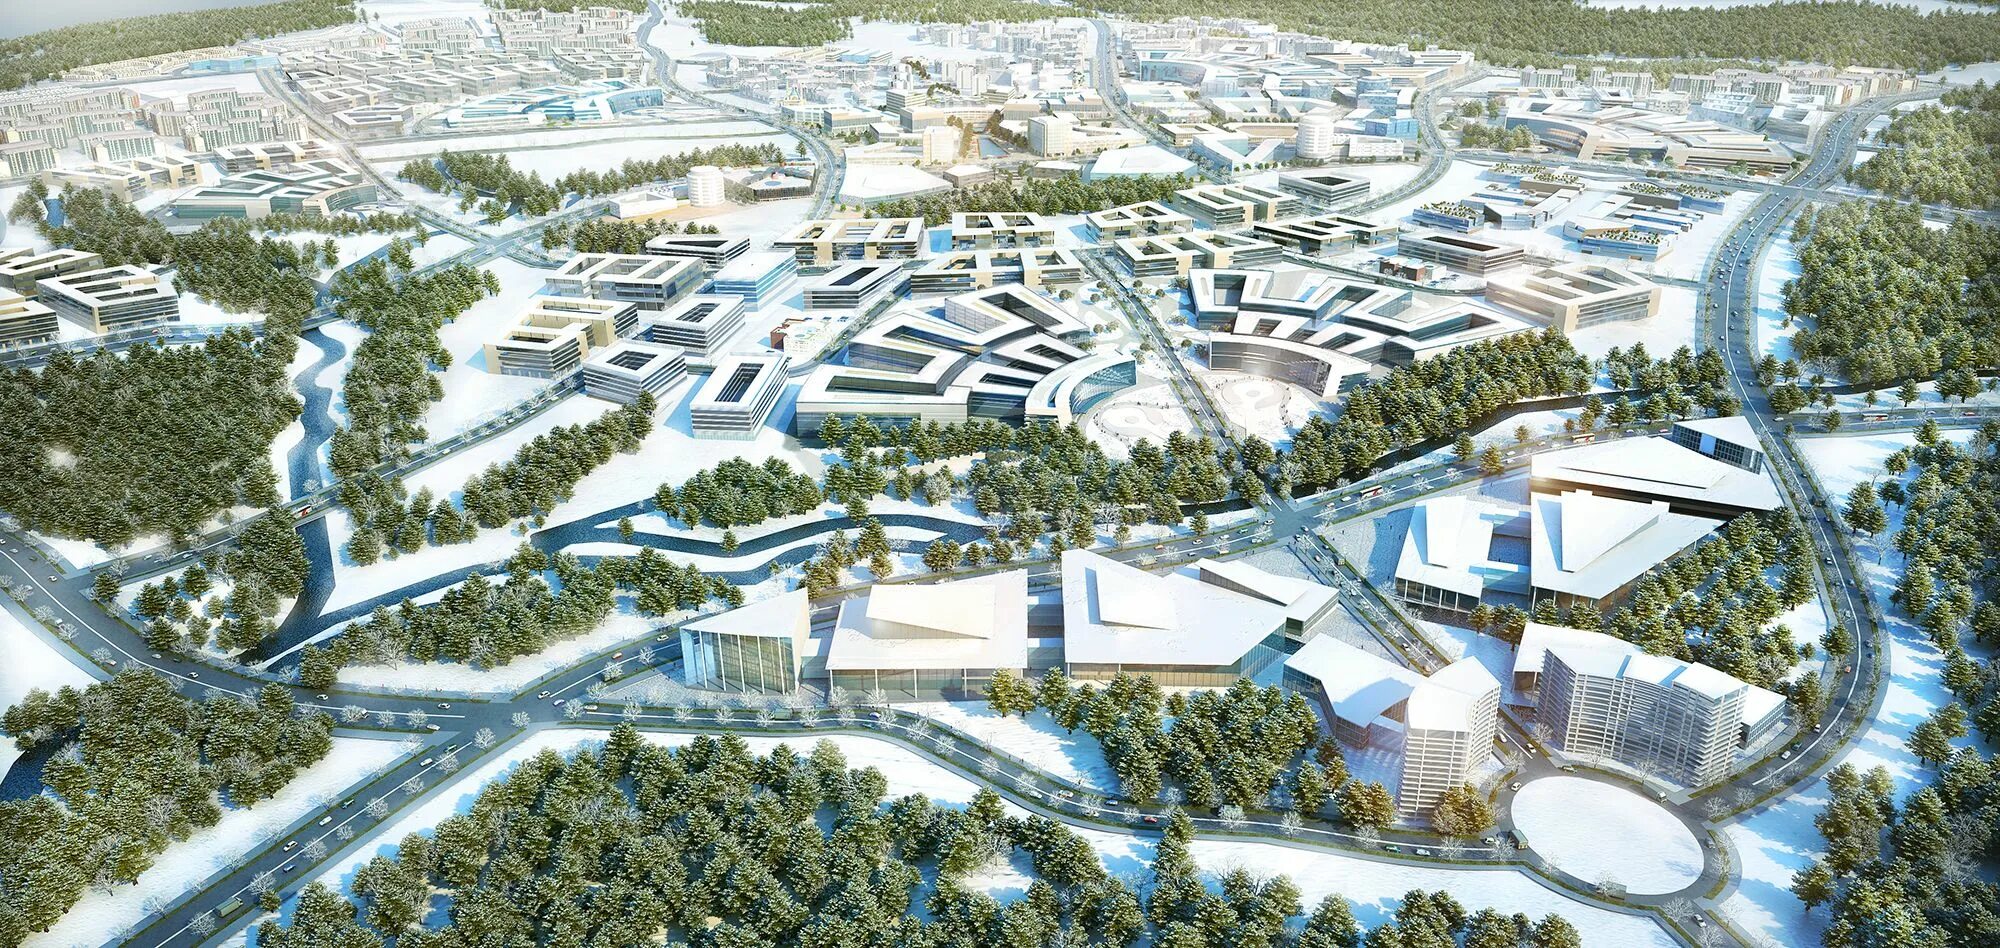 Трепачи 2023 г. Иннополис город 2022. Иннополис проект города. Иннополис город 2023. Иннополис умный город.